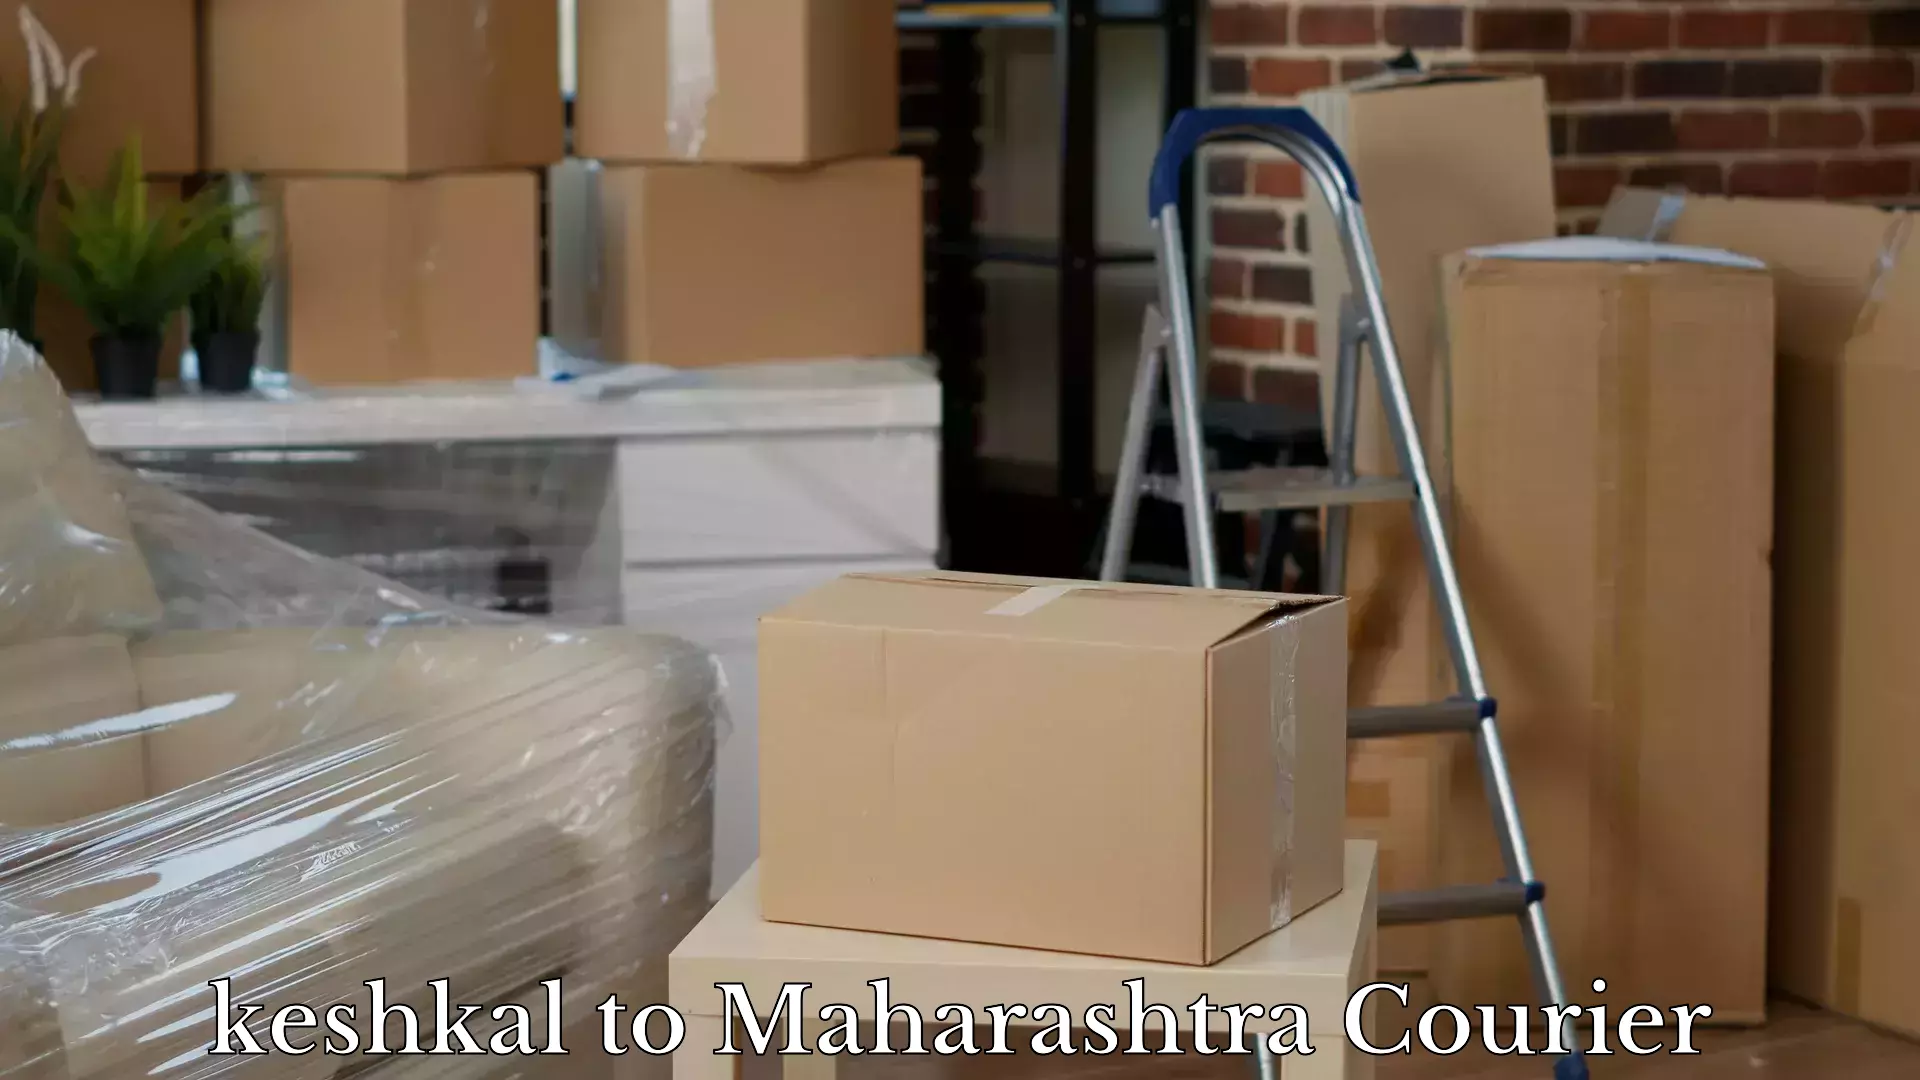 Luggage transport deals keshkal to Nandura